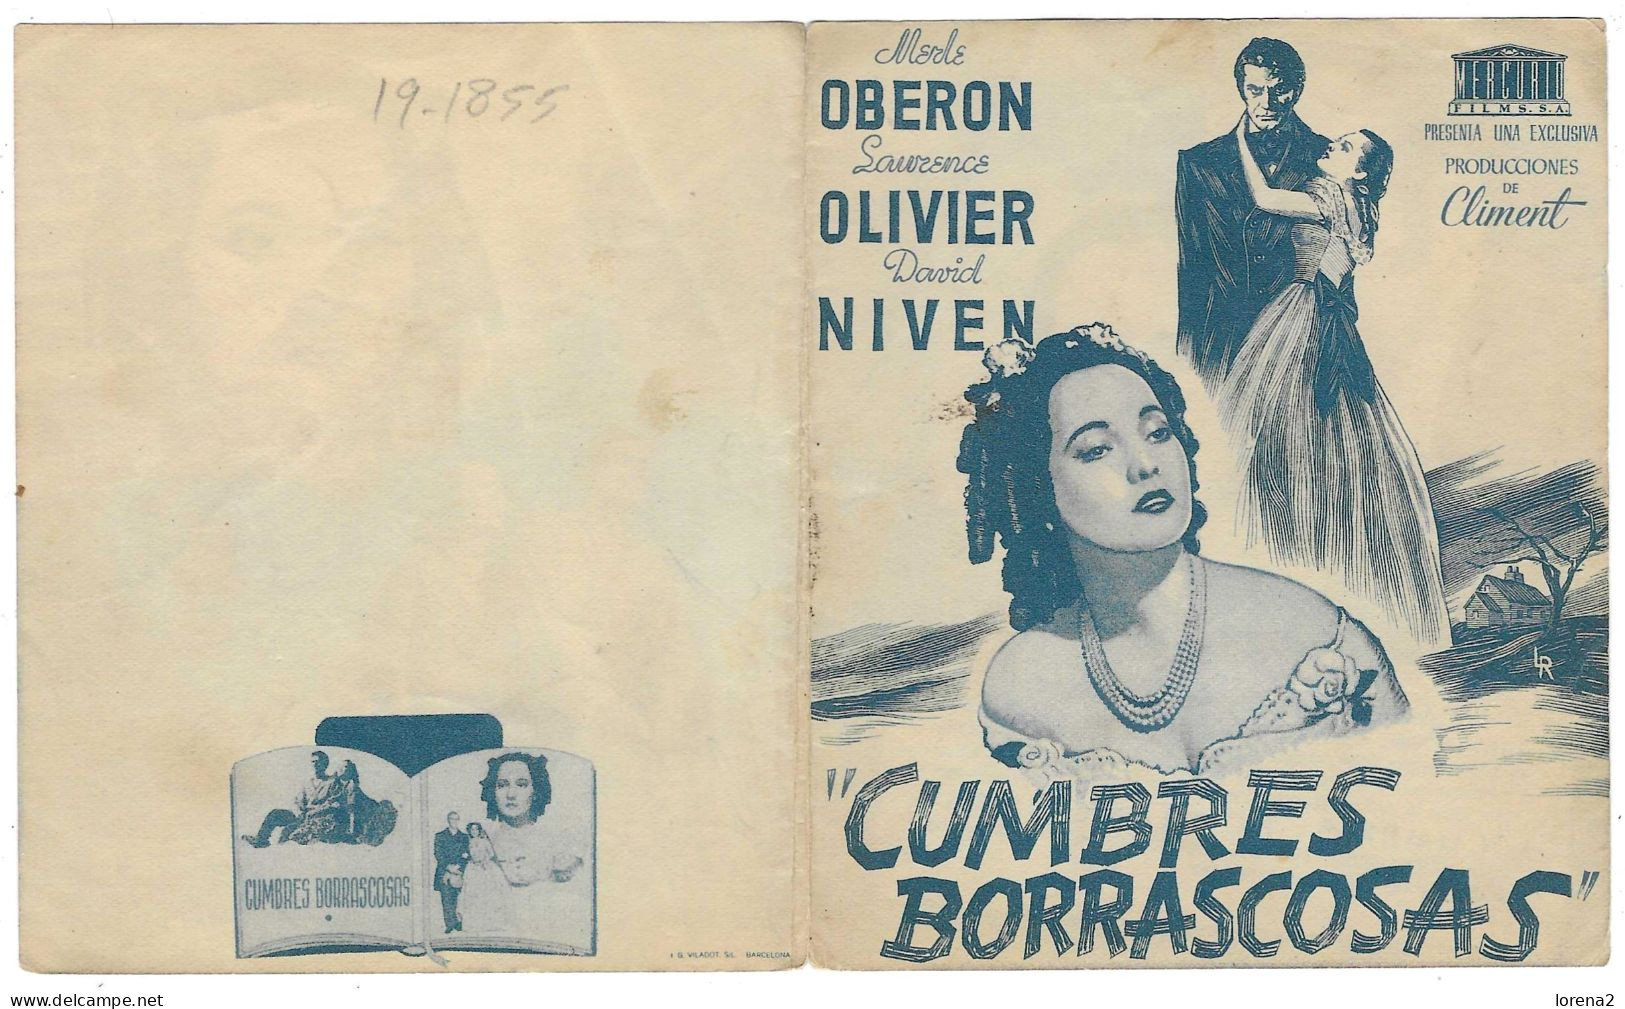 Programa Cine. Cumbres Borrascosas. Laurence Olivier. 19-1855 - Pubblicitari